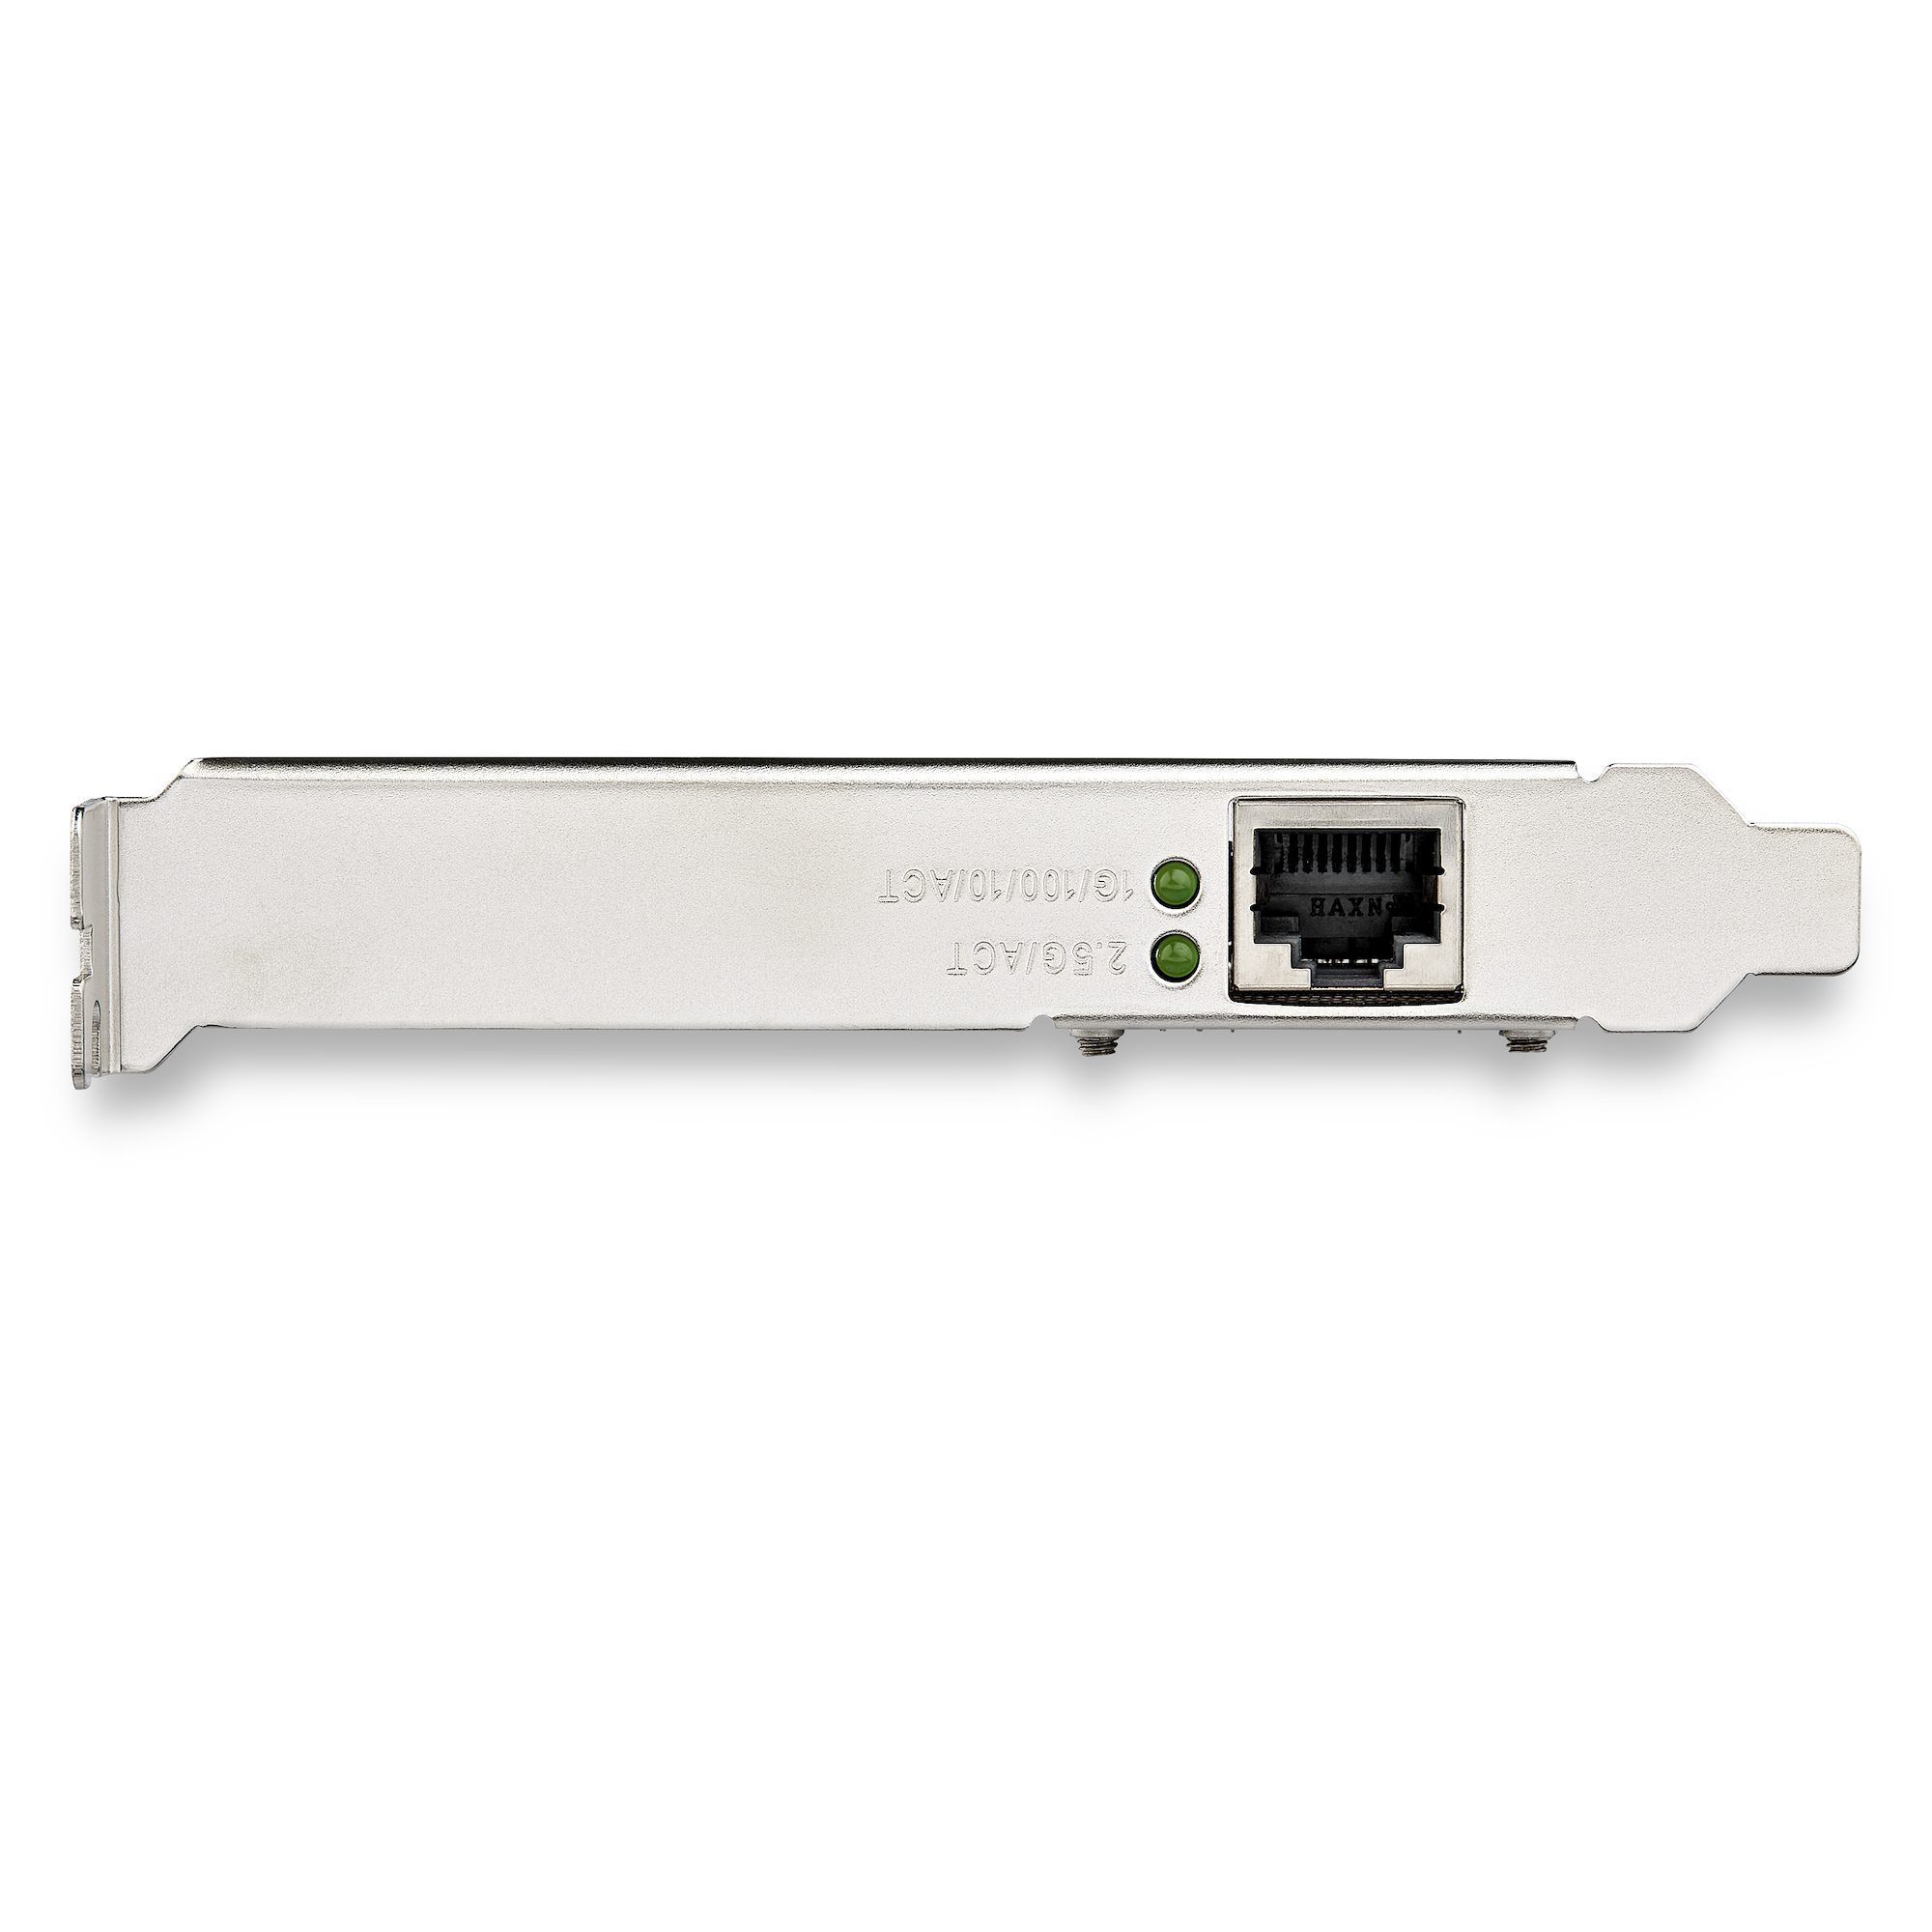 StarTech.com Carte Réseau PCIe à 2 Ports 2,5 Gbps   (PR22GI-NETWORK-CARD). Open iT - Informatique et Haute technologie